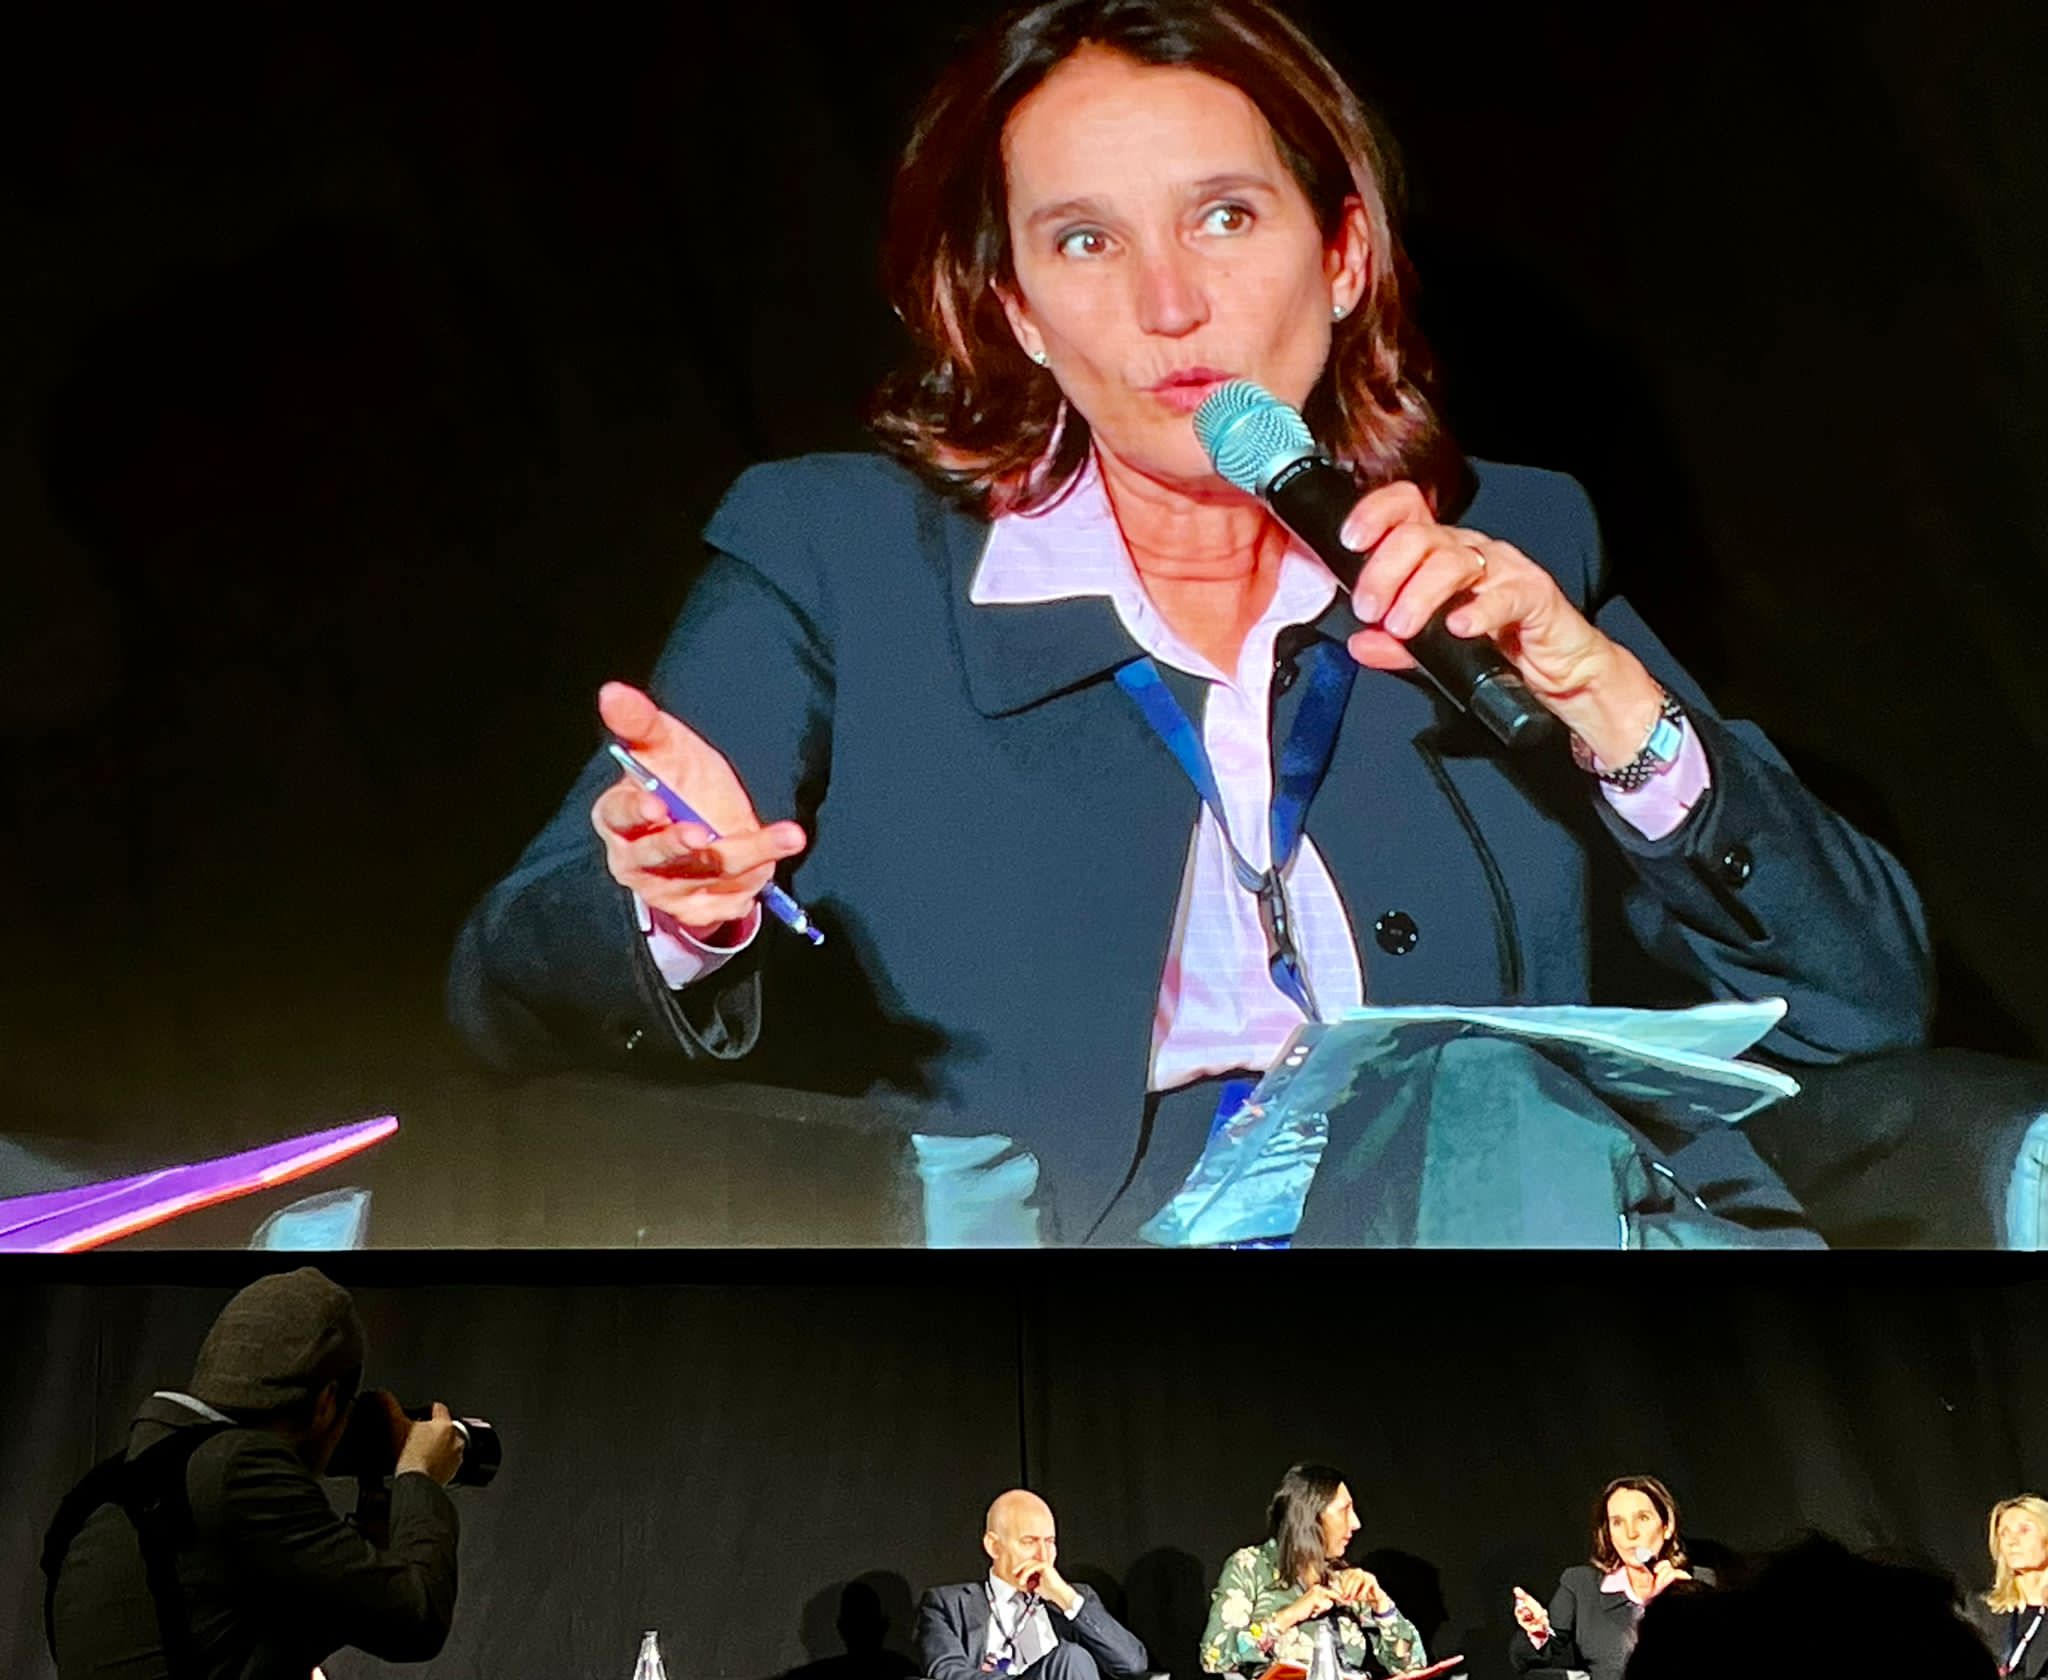 La presidente di AGI, Tatiana Biagioni, alla tavola rotonda: "È Previdenza: regolamenti e sostenibilità", nel corso del congresso straordinario di Aiga